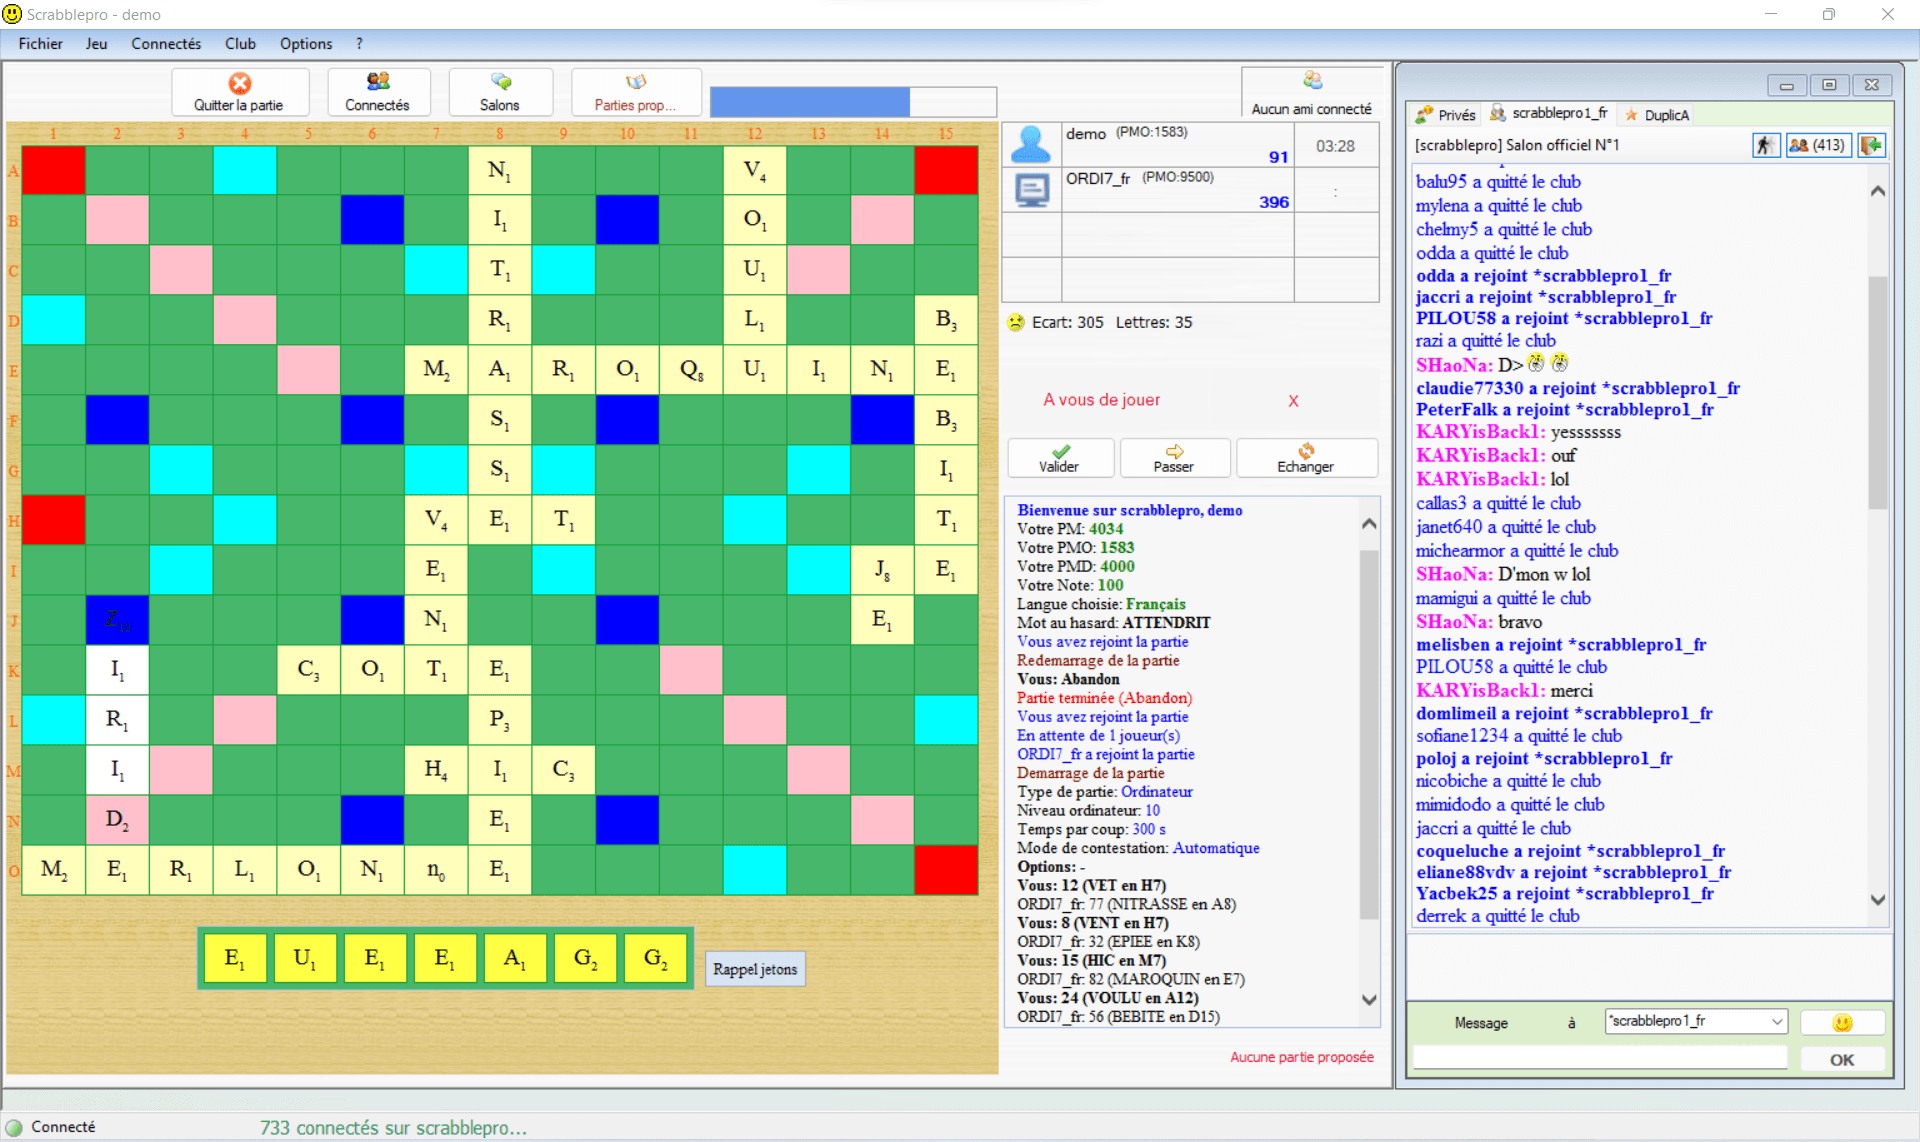 Scrabble: 5 conseils pour jouer comme un pro